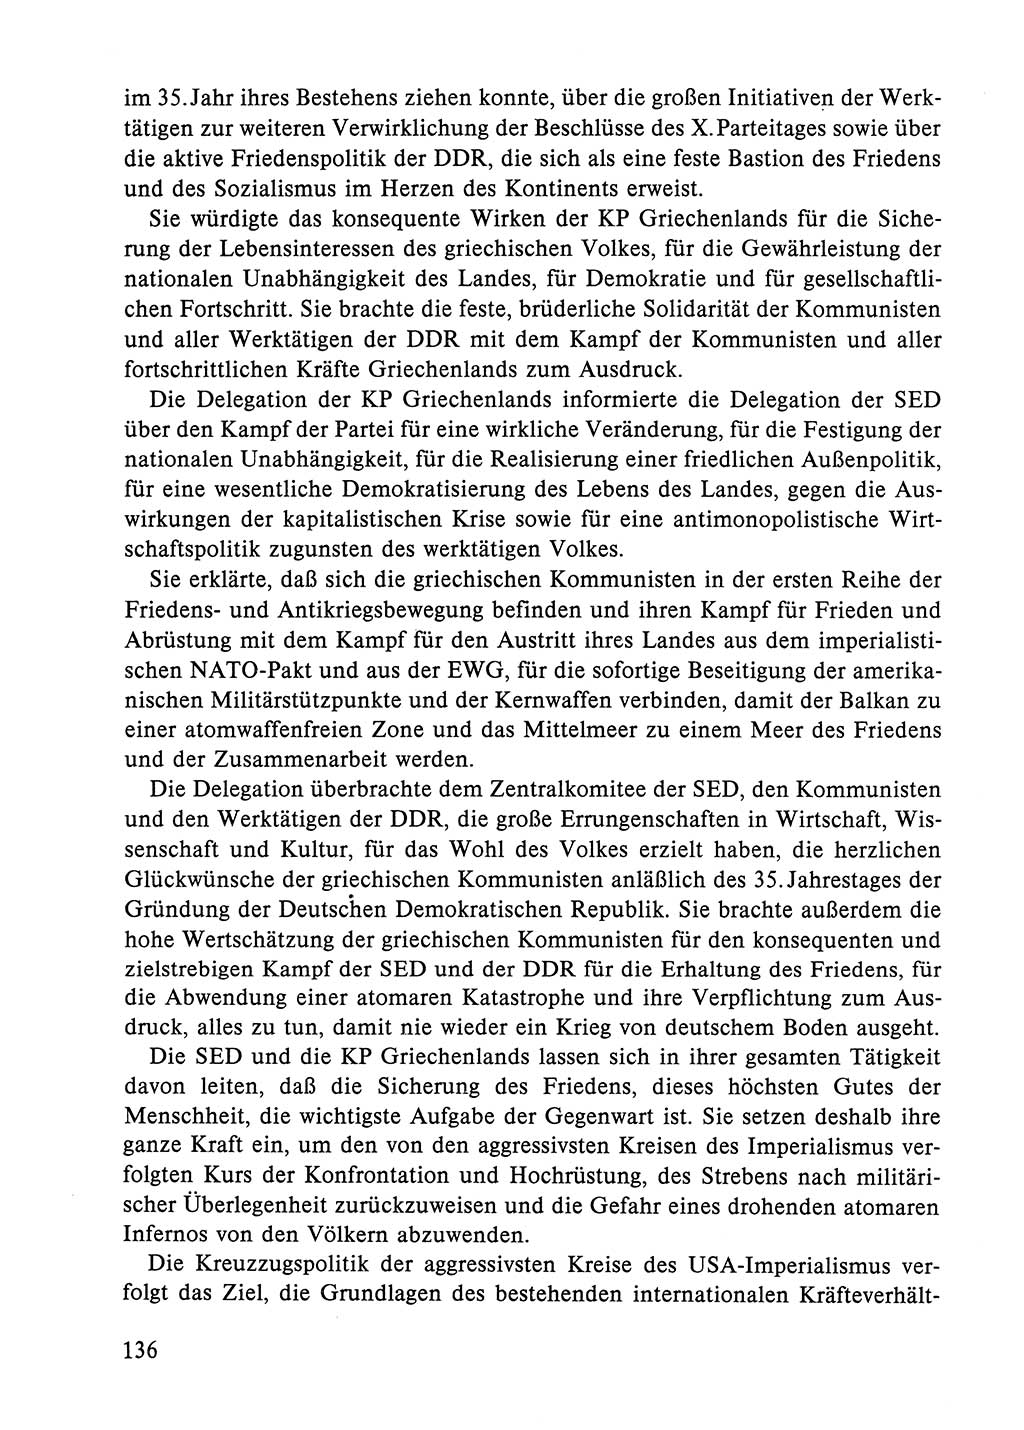 Dokumente der Sozialistischen Einheitspartei Deutschlands (SED) [Deutsche Demokratische Republik (DDR)] 1984-1985, Seite 291 (Dok. SED DDR 1984-1985, S. 291)